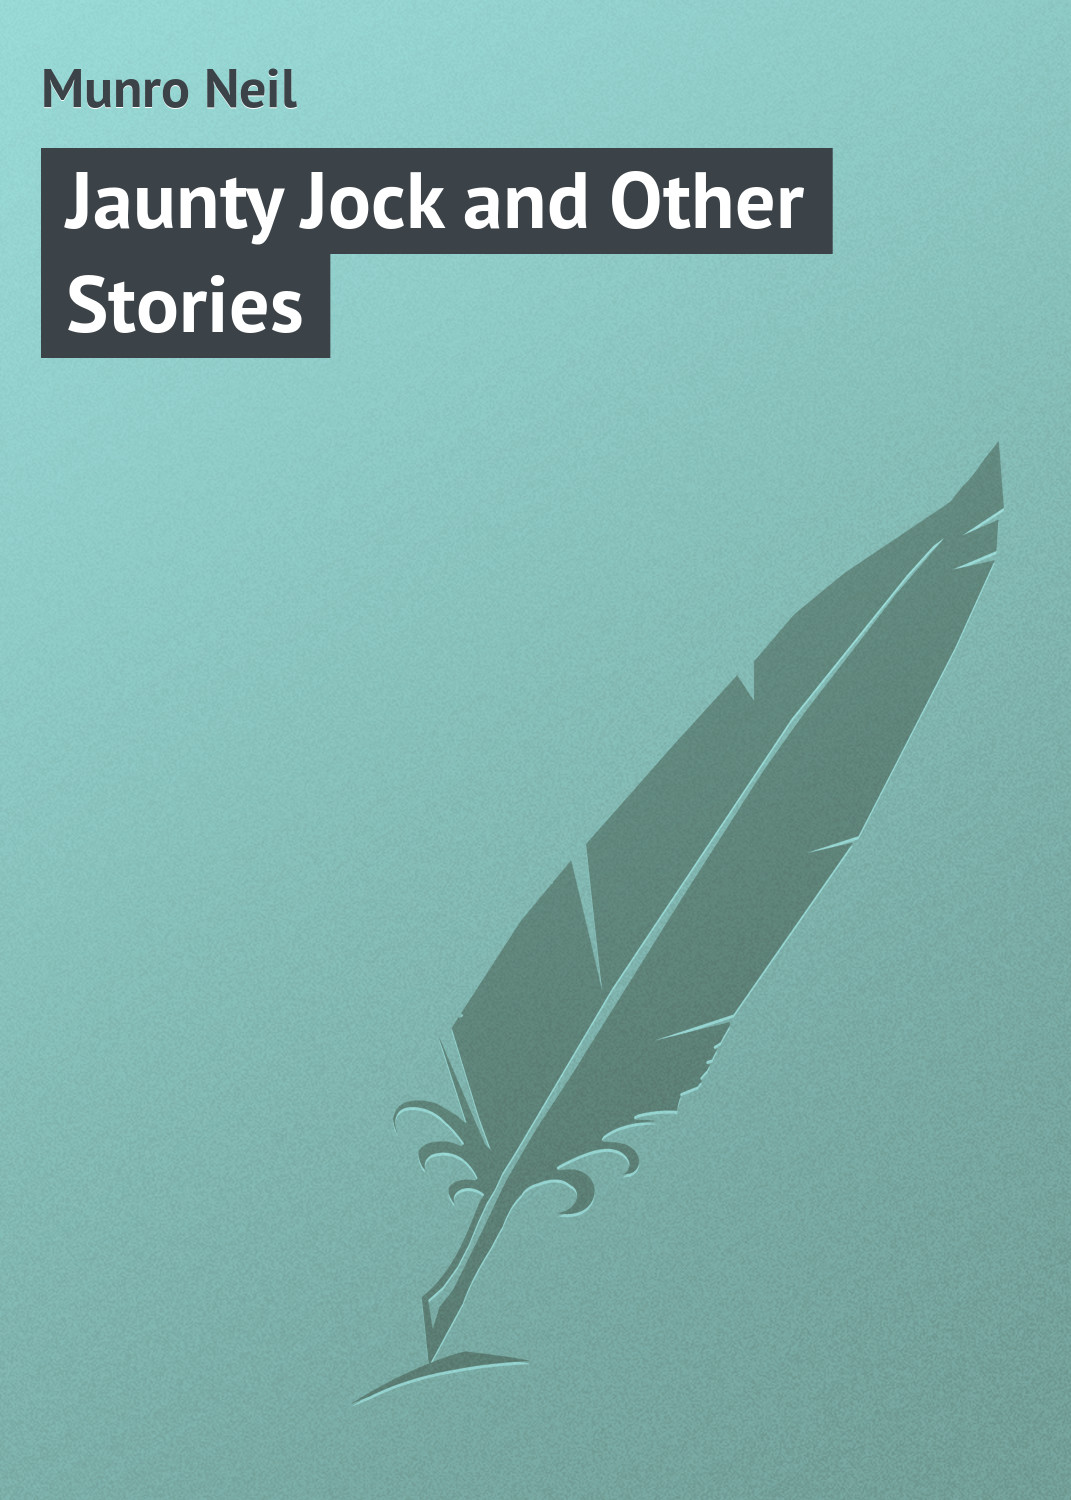 Книга Jaunty Jock and Other Stories из серии , созданная Neil Munro, может относится к жанру Иностранные языки, Зарубежная классика. Стоимость электронной книги Jaunty Jock and Other Stories с идентификатором 23159603 составляет 5.99 руб.